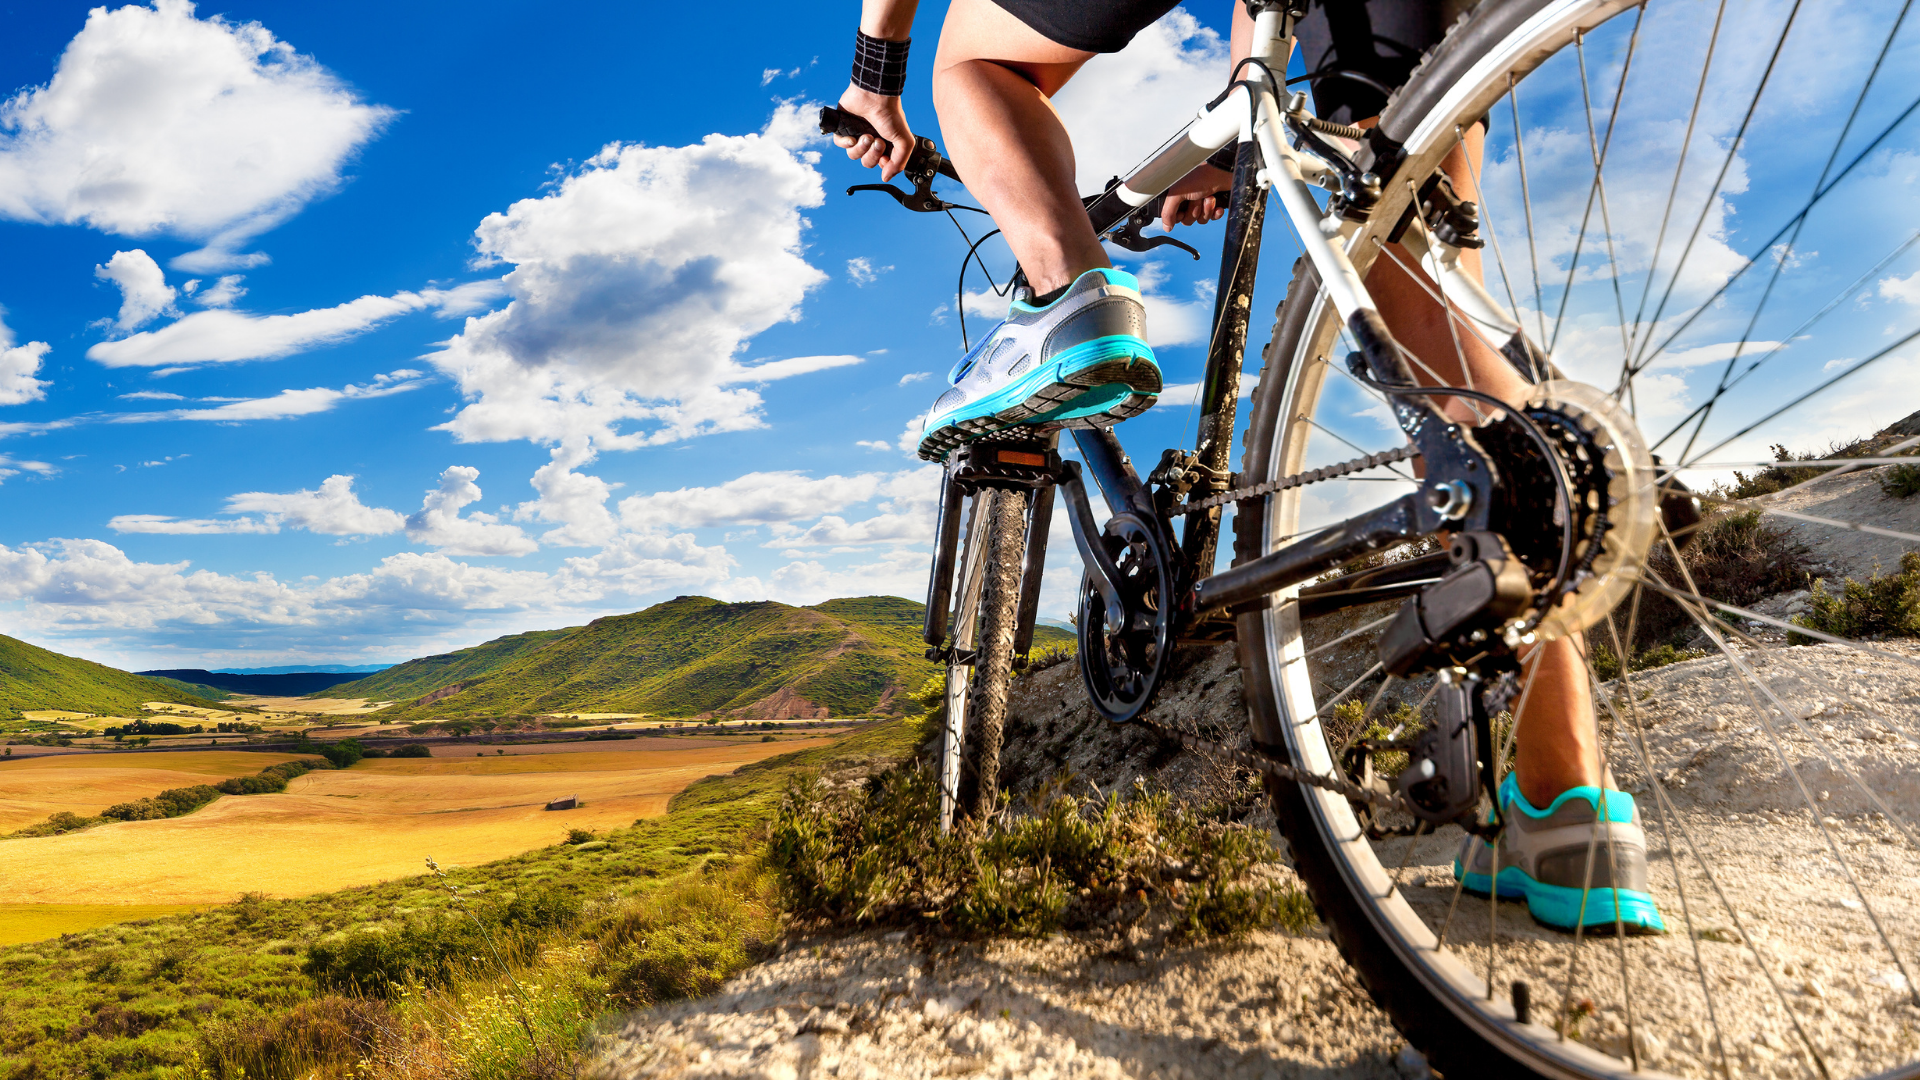 Bicicleta para Cross Country e outras modalidades de Mountain Bike. Foto: Getty Images.